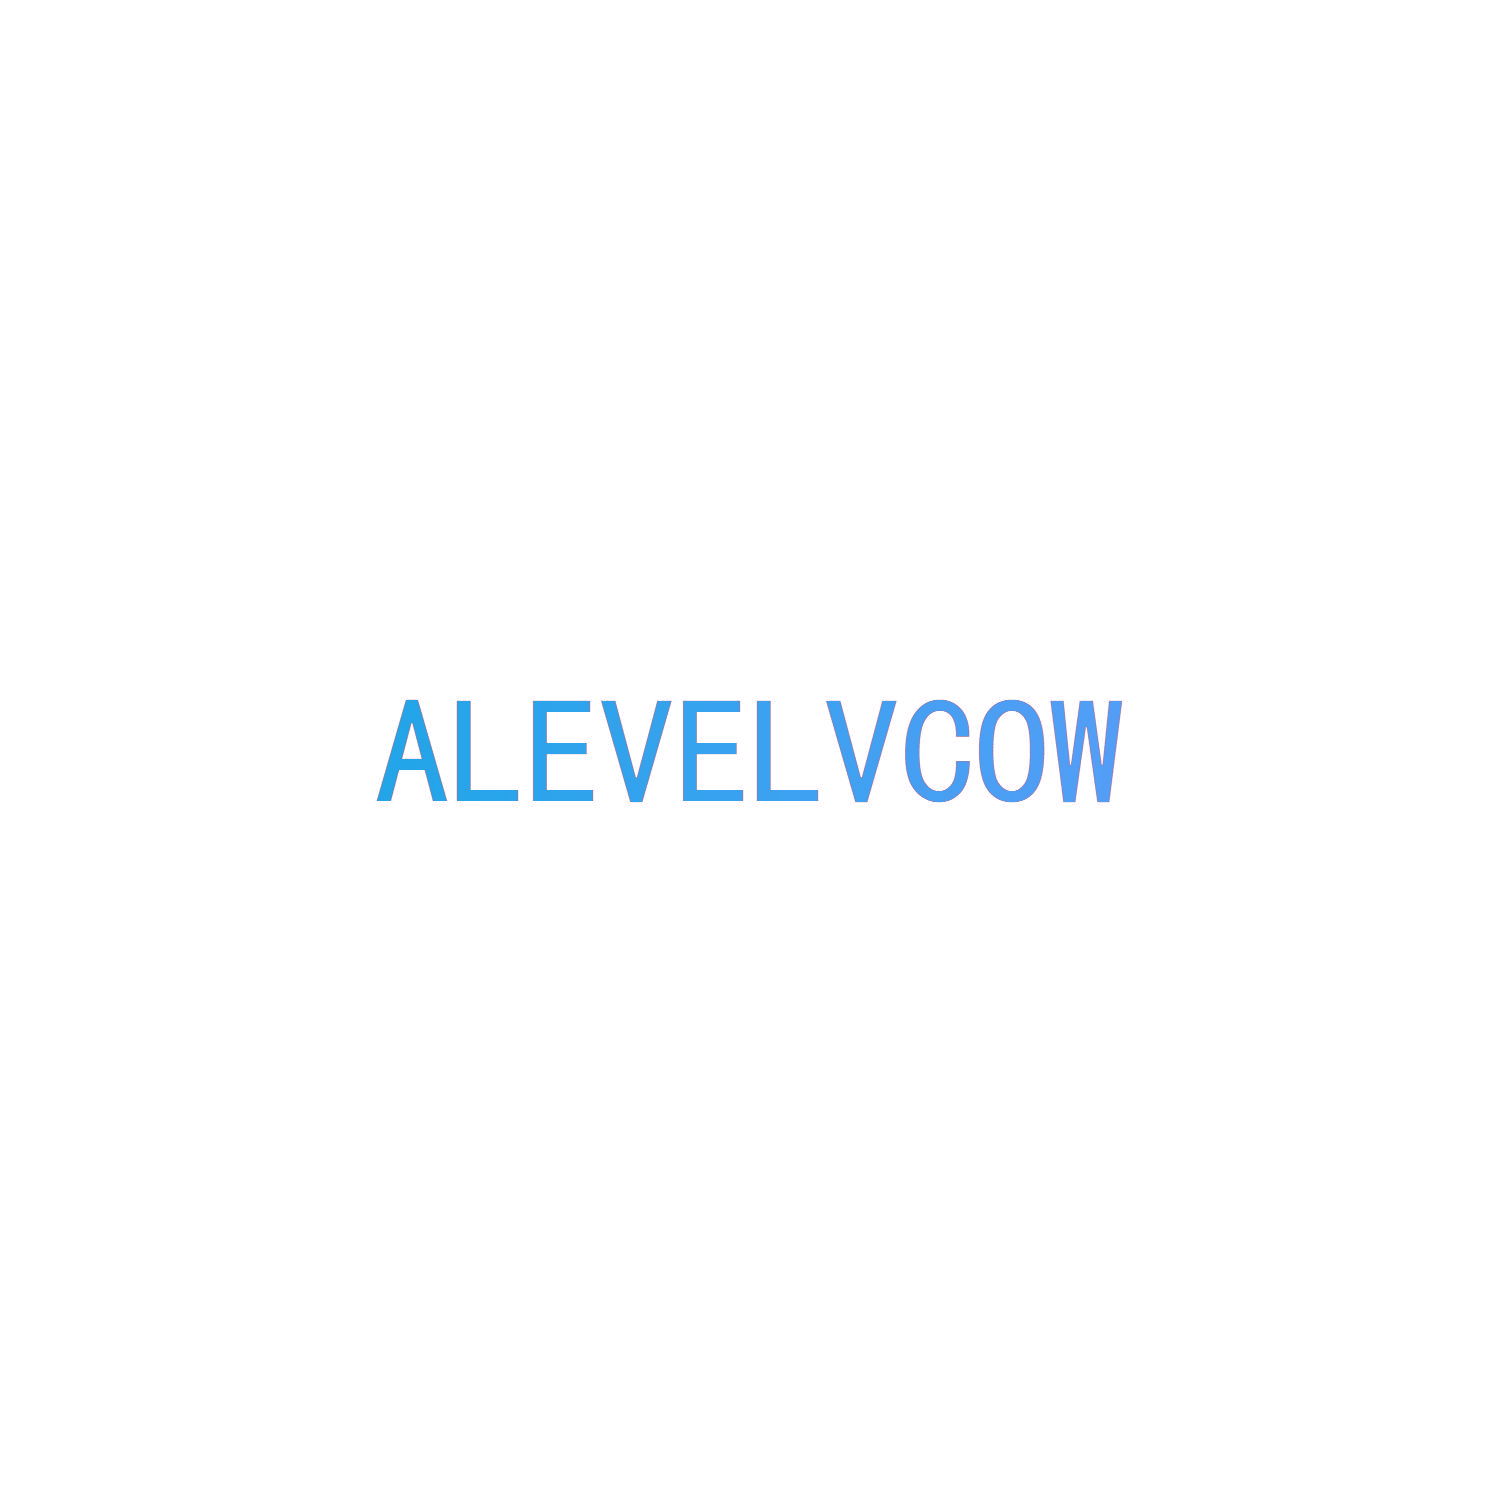 ALEVELVCOW